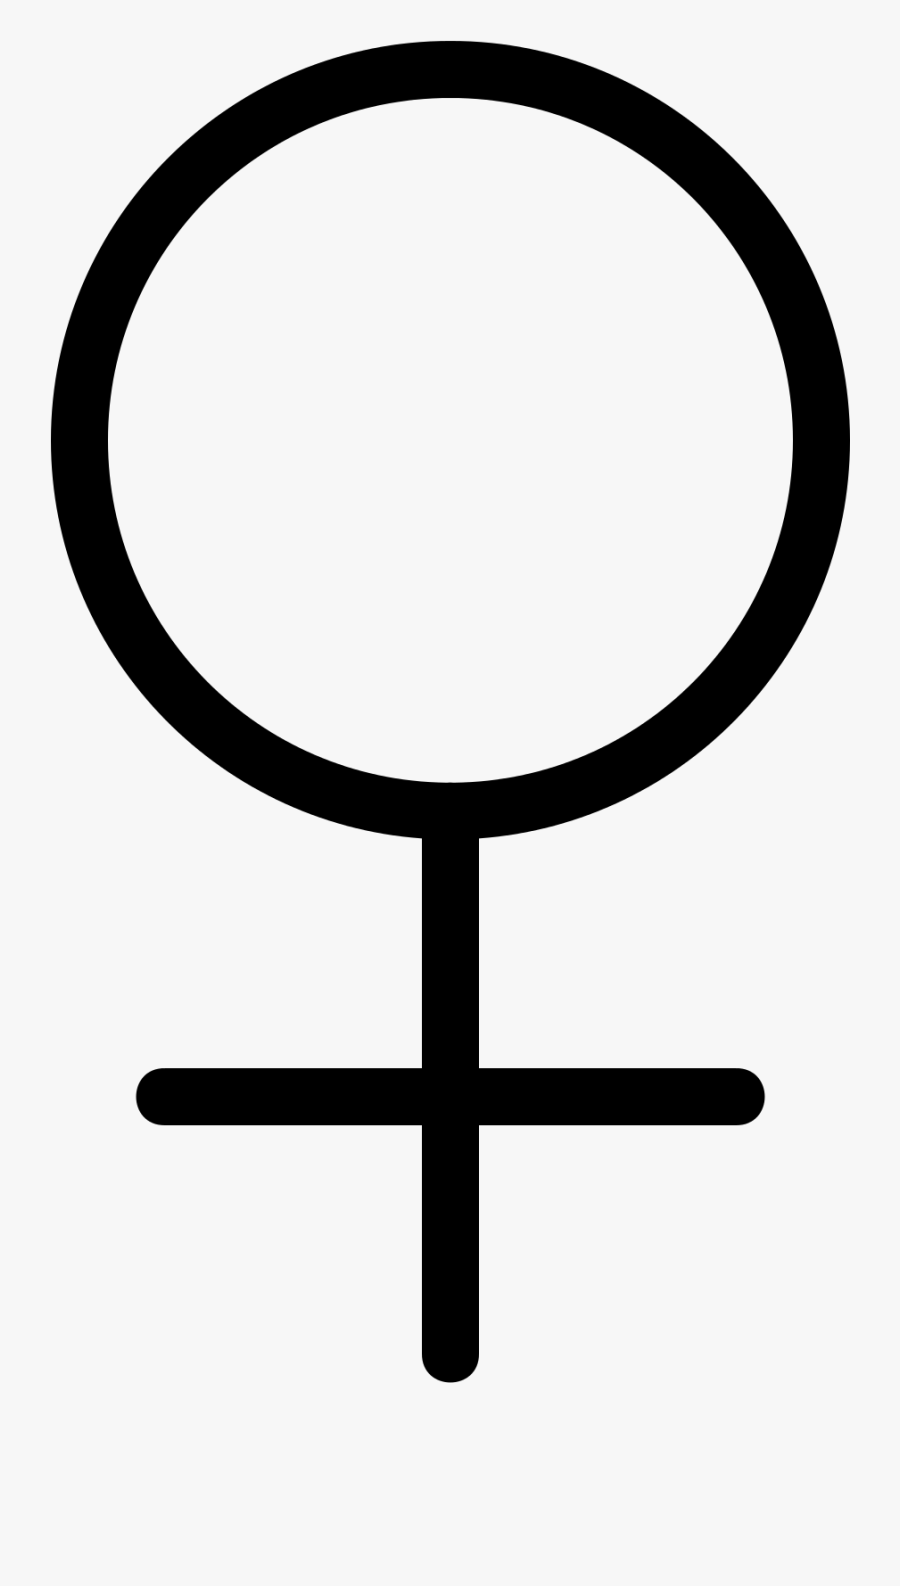 Bildresultat För Venus Symbol - Adsl, Transparent Clipart